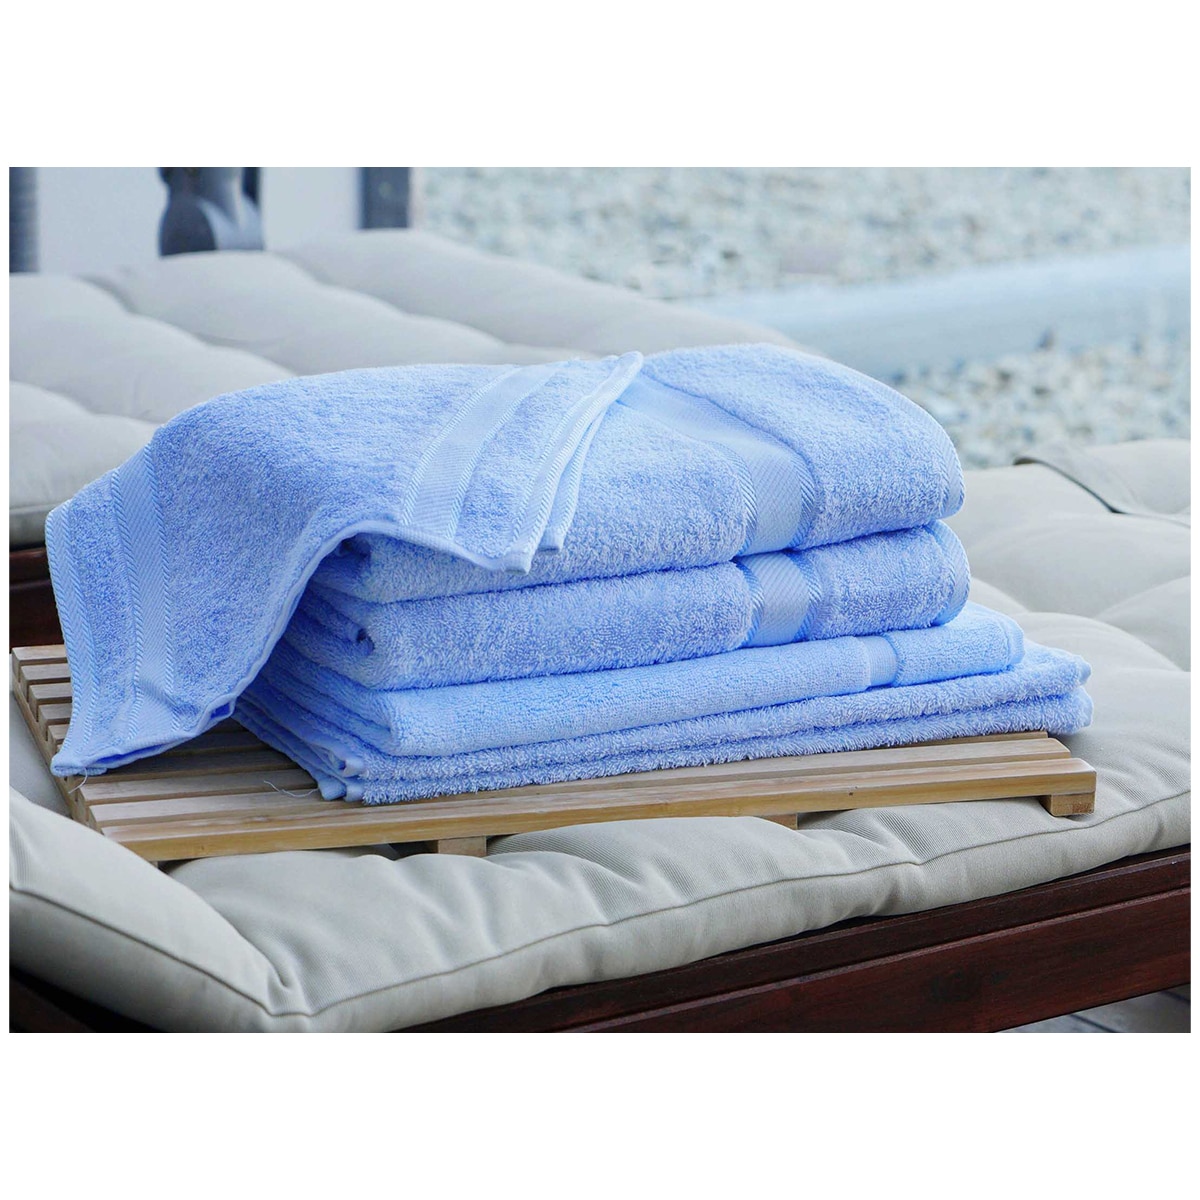 Kingtex Plain dyed 100% Combed Cotton towel range 550gsm Bath Sheet set 7 piece - Mid Blue